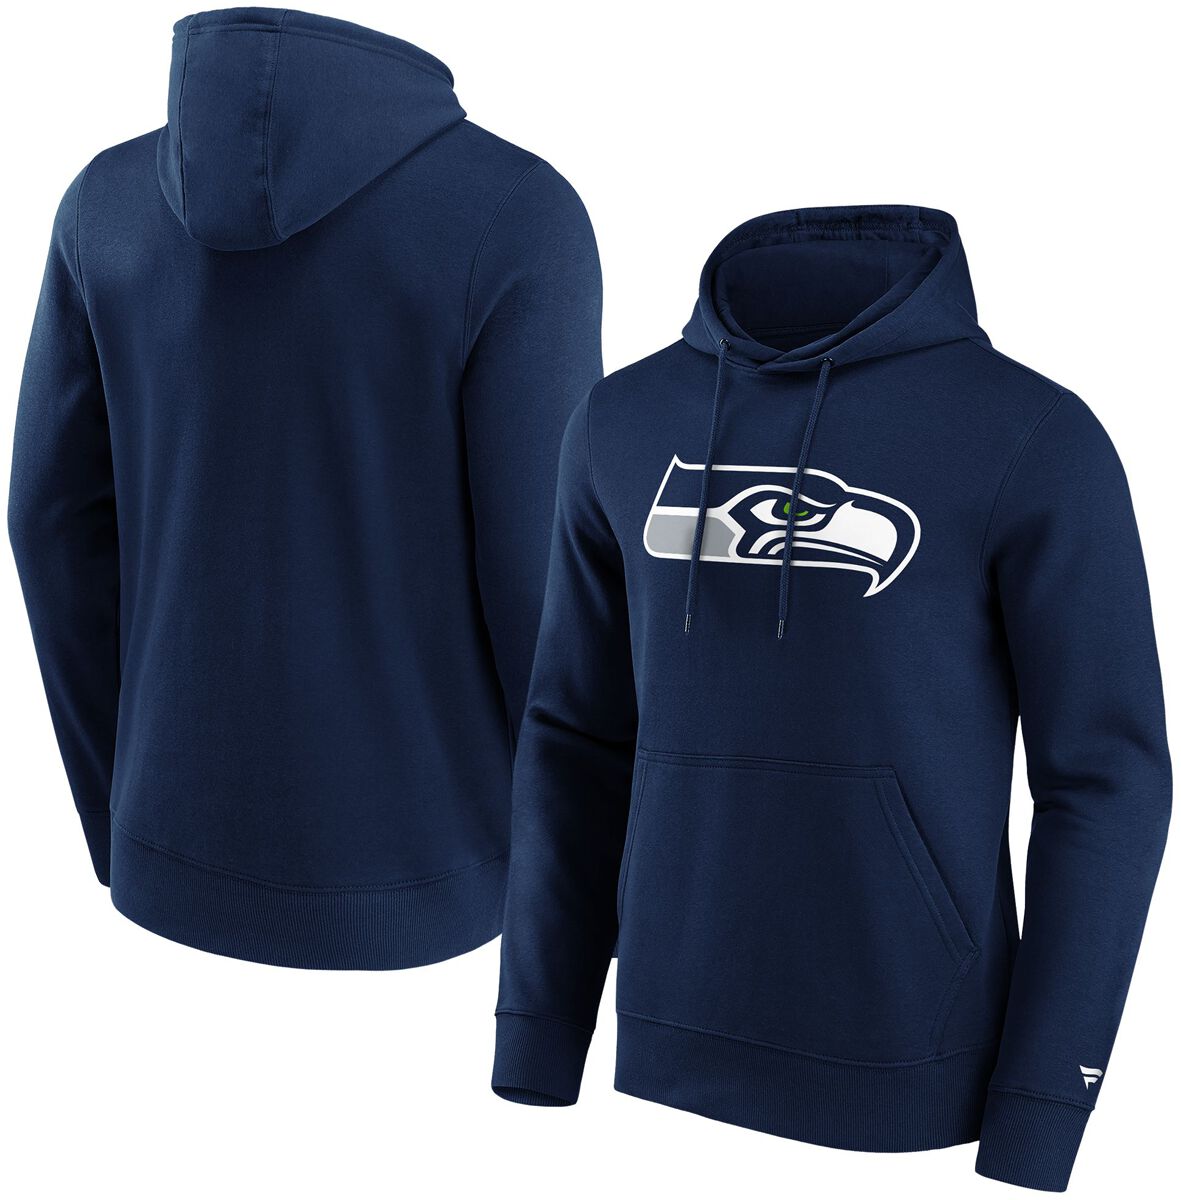 Fanatics Kapuzenpullover - Seattle Seahawks Logo - S bis L - für Männer - Größe M - navy